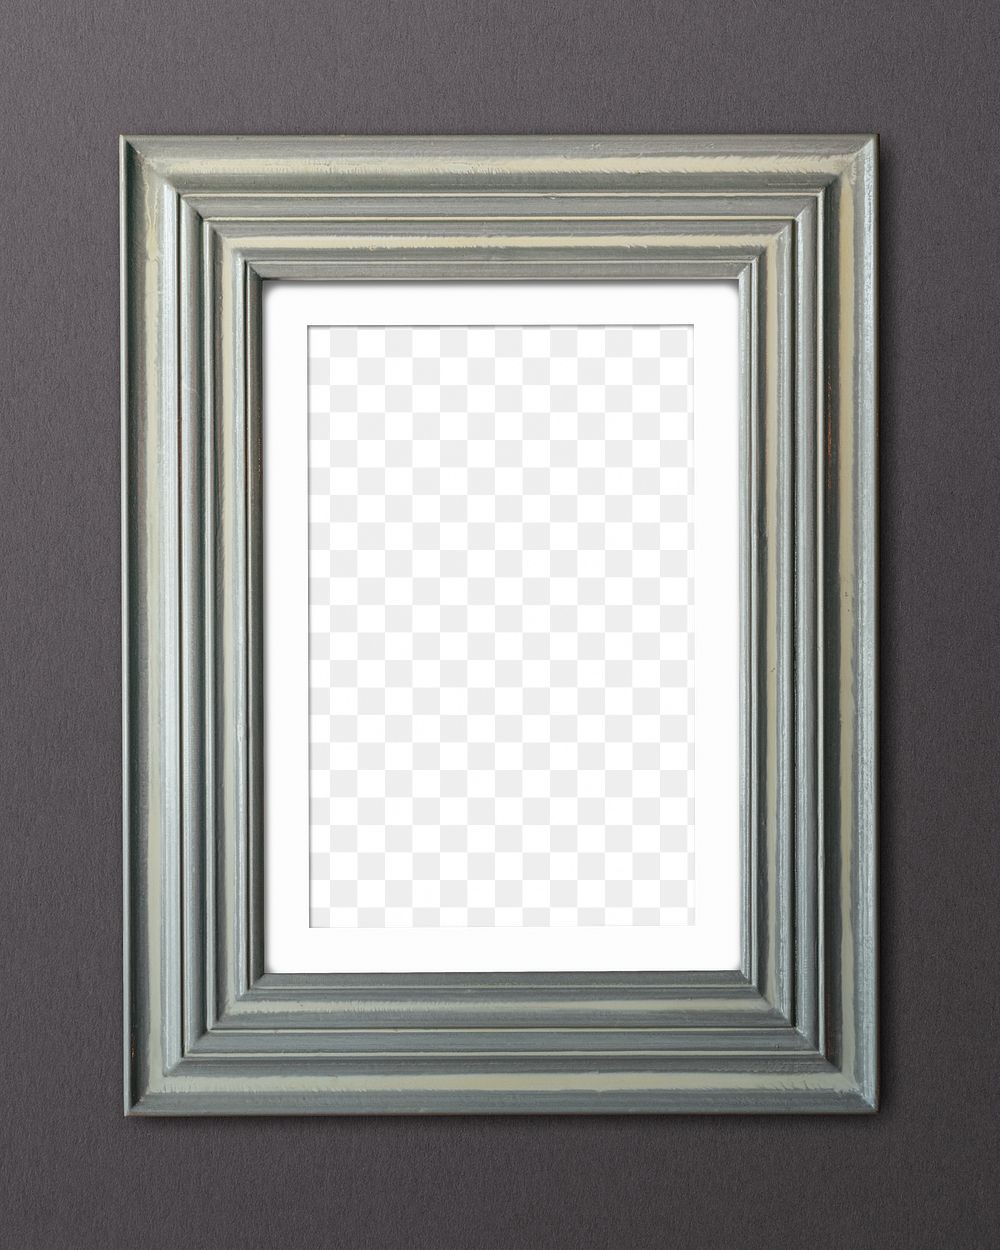 Gray frame png mockup, transparent design